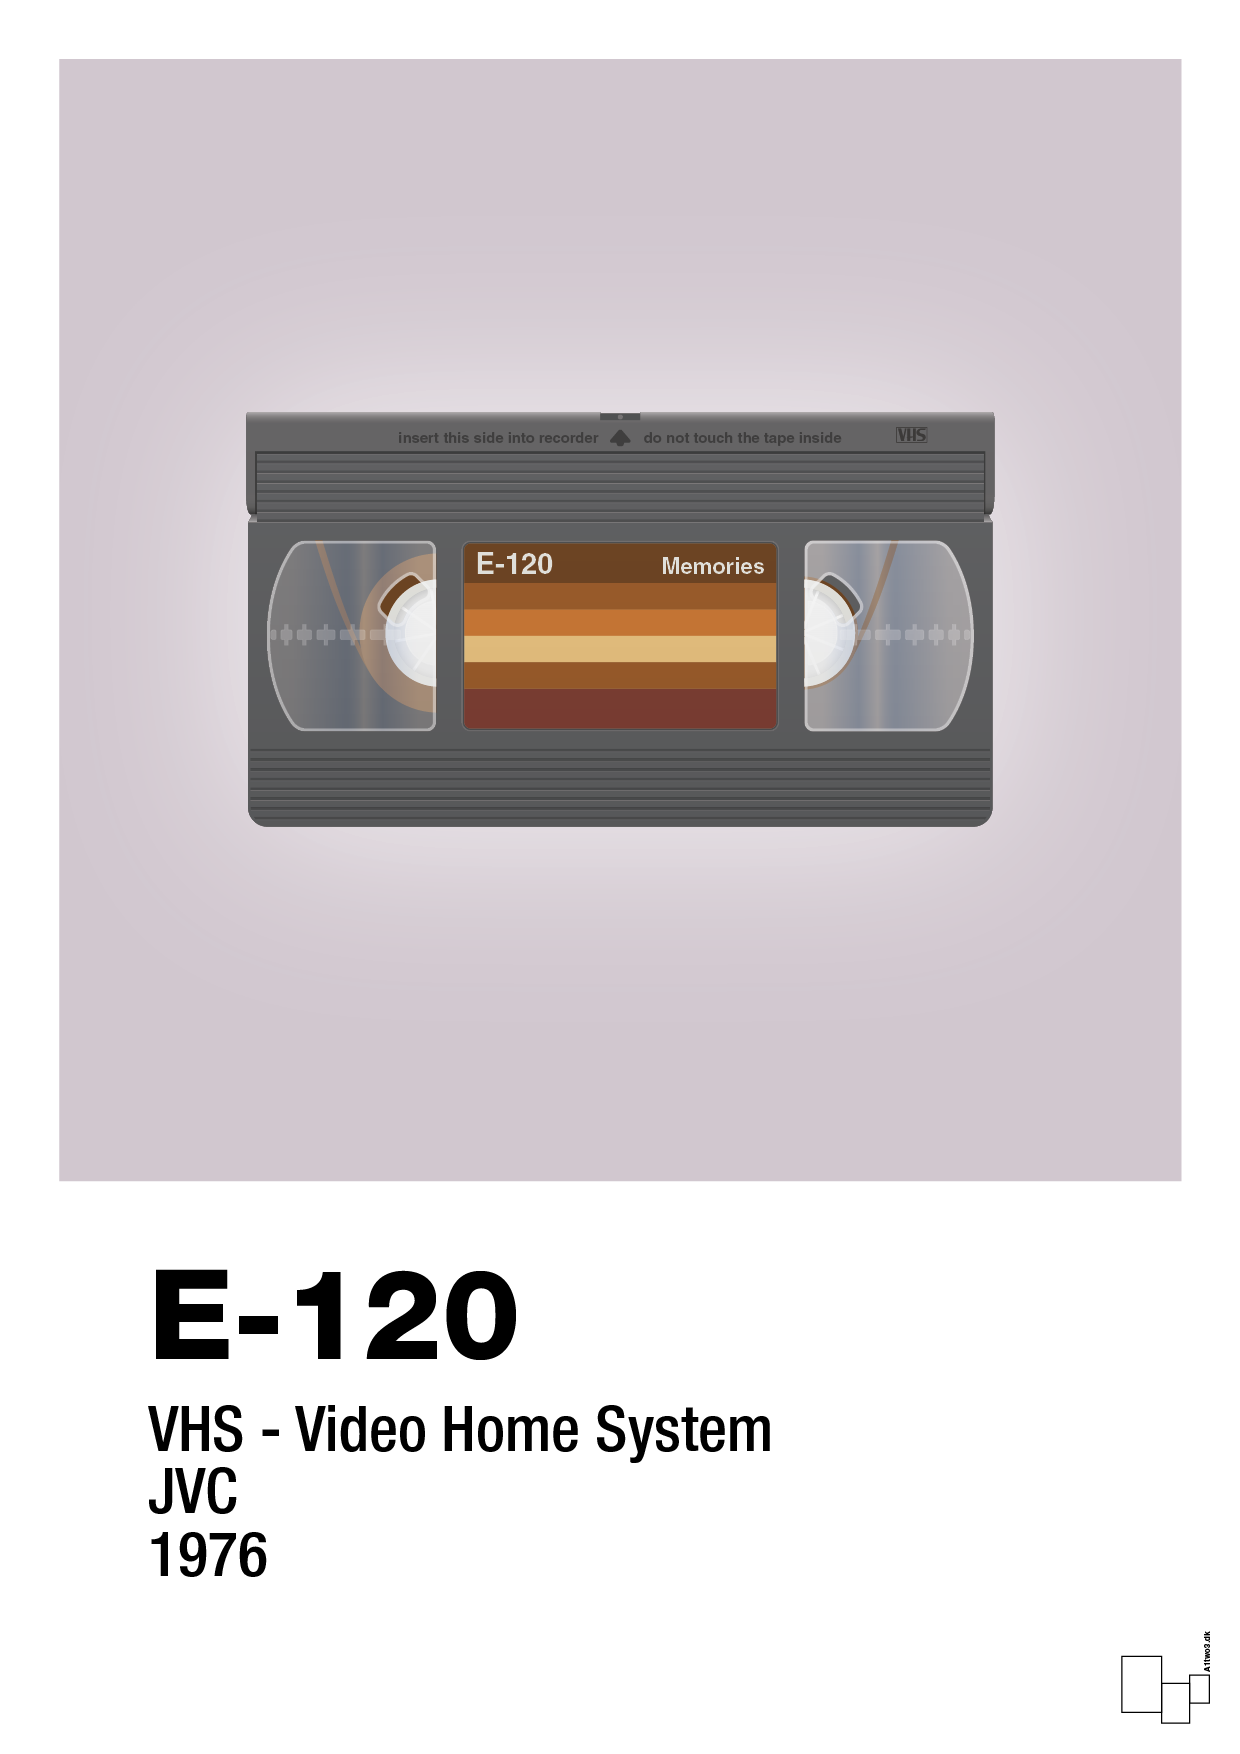 videobånd e-120 - Plakat med Grafik i Dusty Lilac